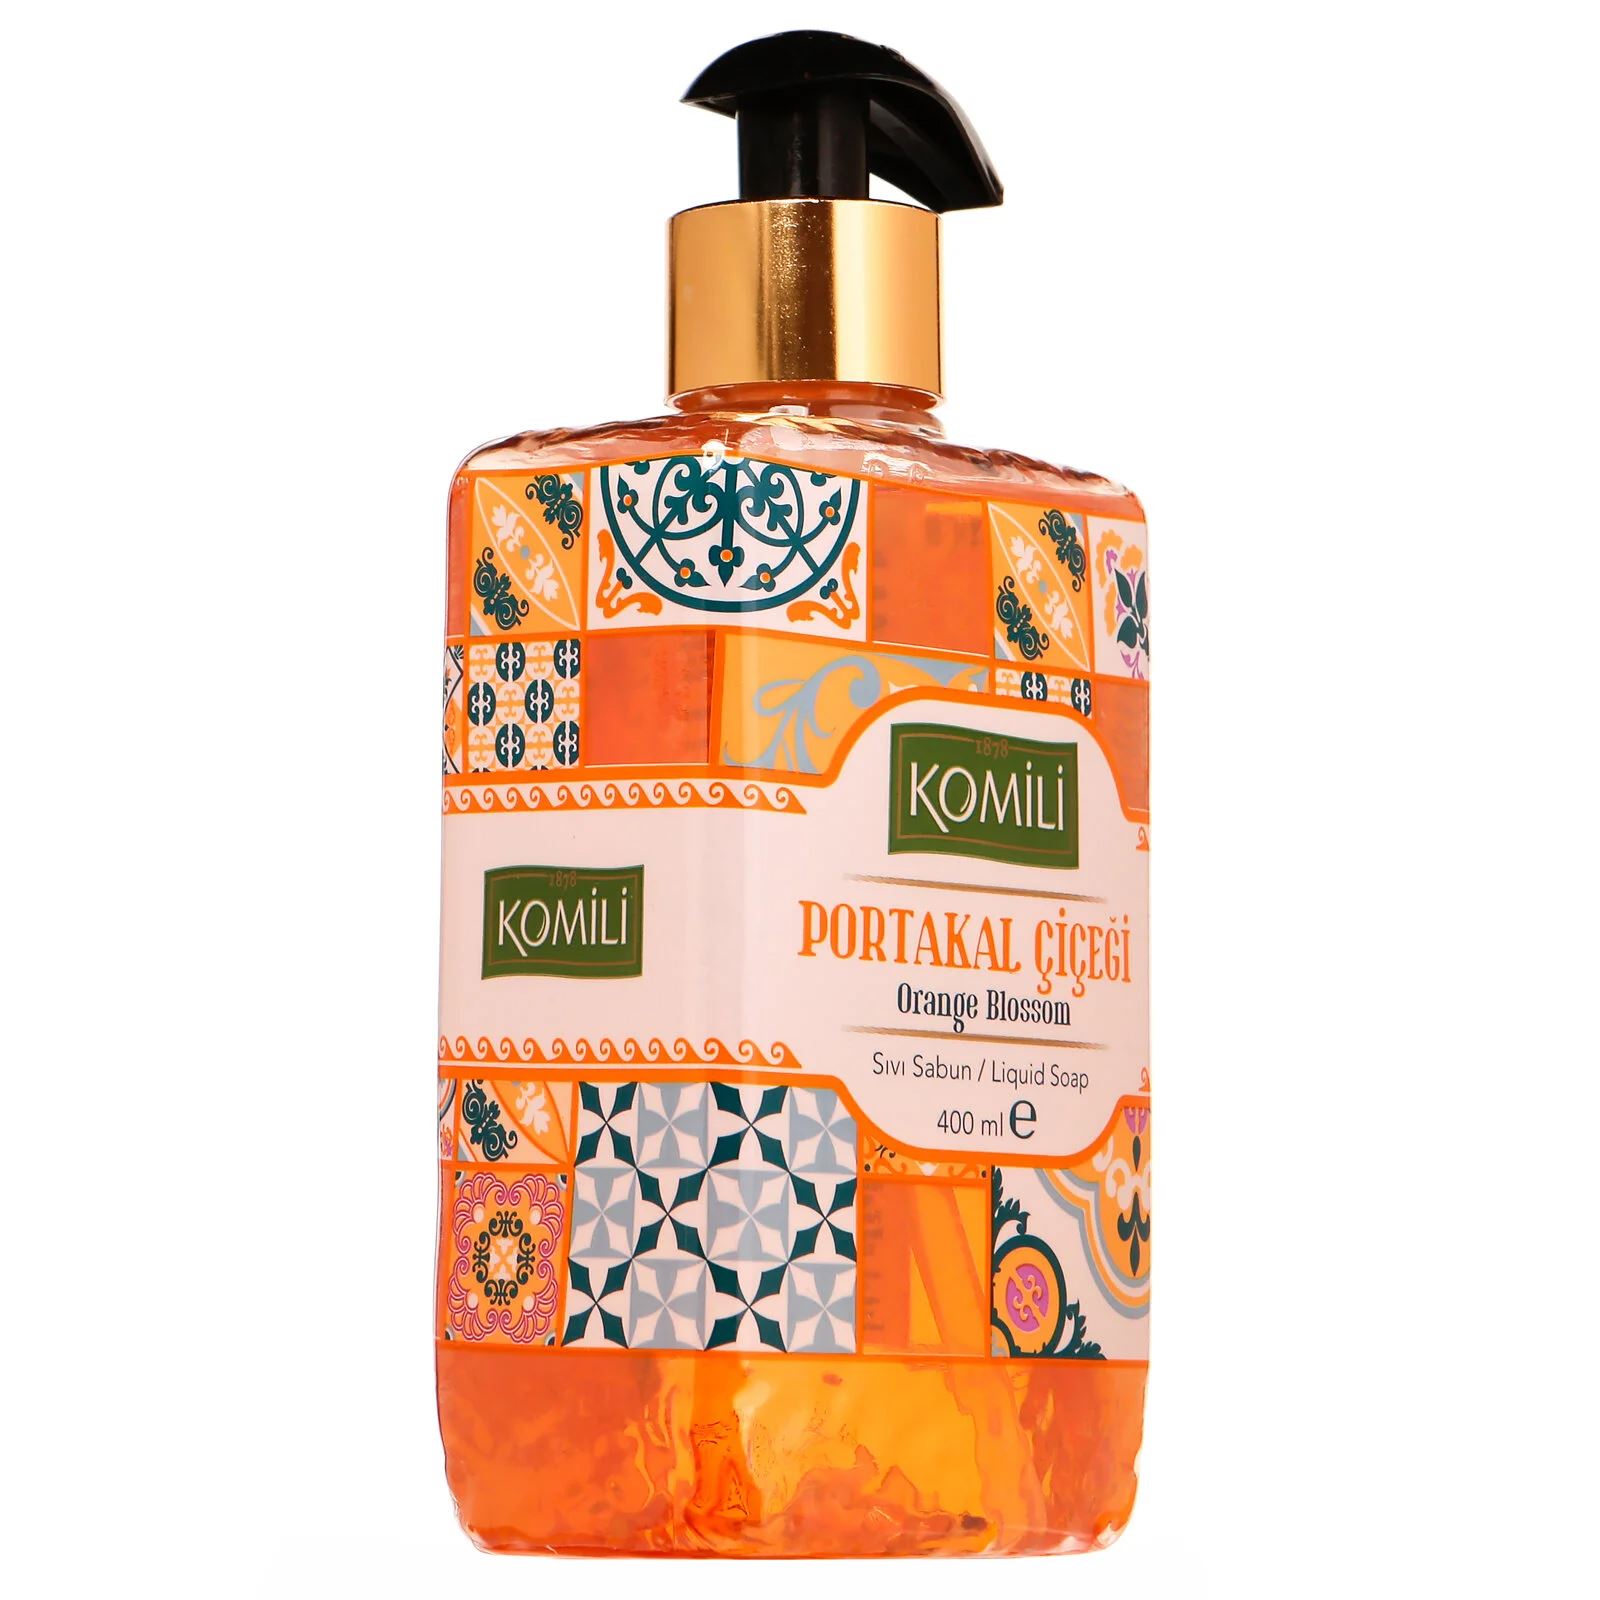 Komili Premium Portakal Çiçeği Sıvı Sabun 400 Ml